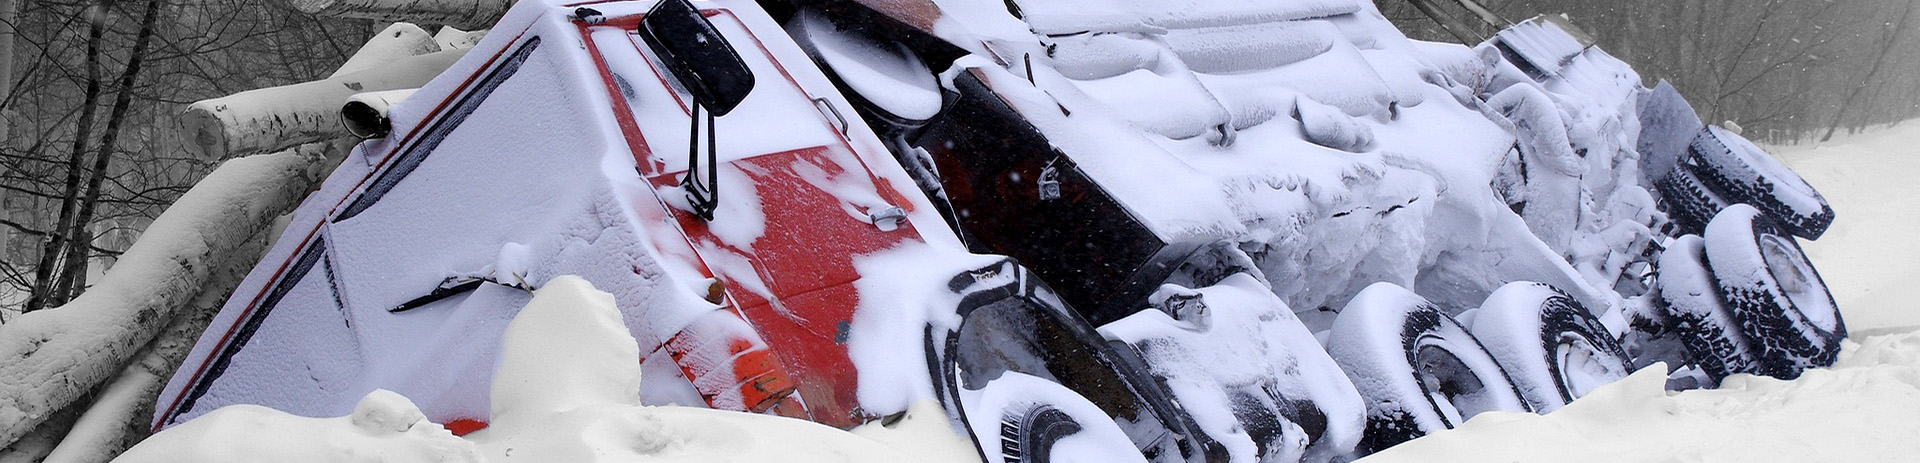 Letselschadevergoeding bij een ongeval door sneeuw of ijs | Letselschadebureau LetselPro